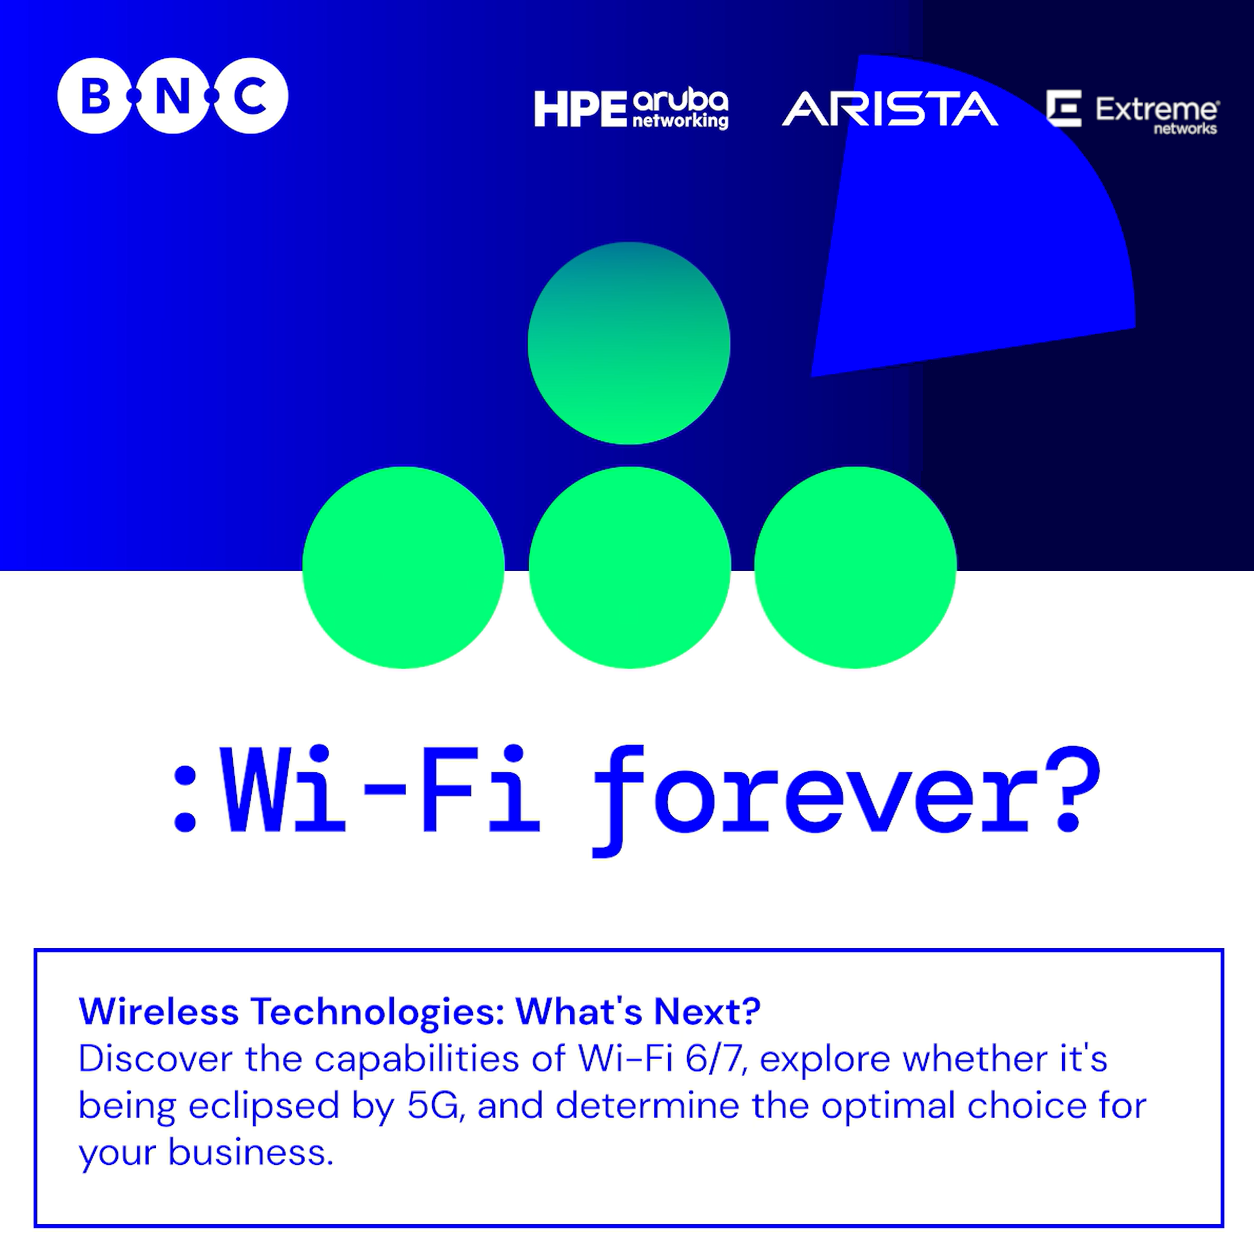 Neue Wi-Fi Forever Kampagne gibt Einblick in die Zukunft der Wireless Technologies